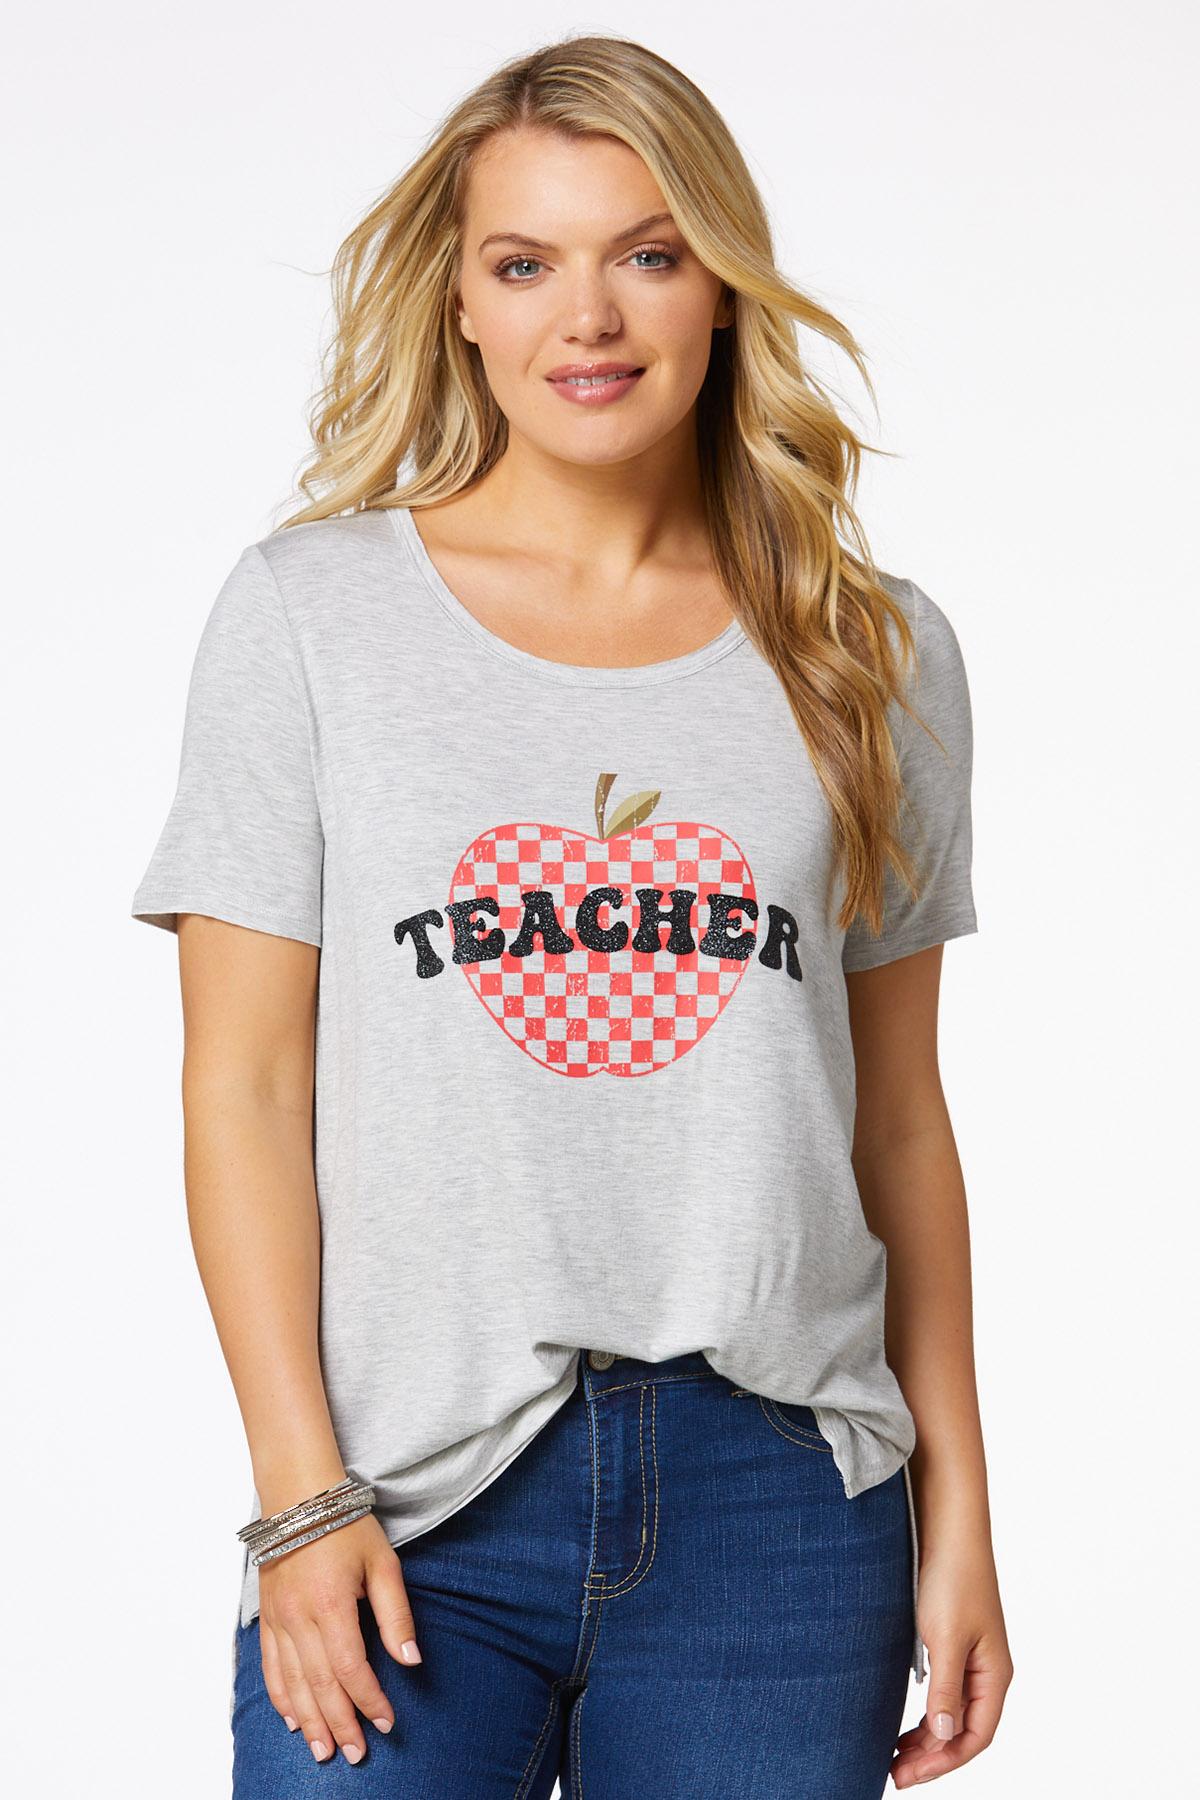 Apple For The Teacher Tee